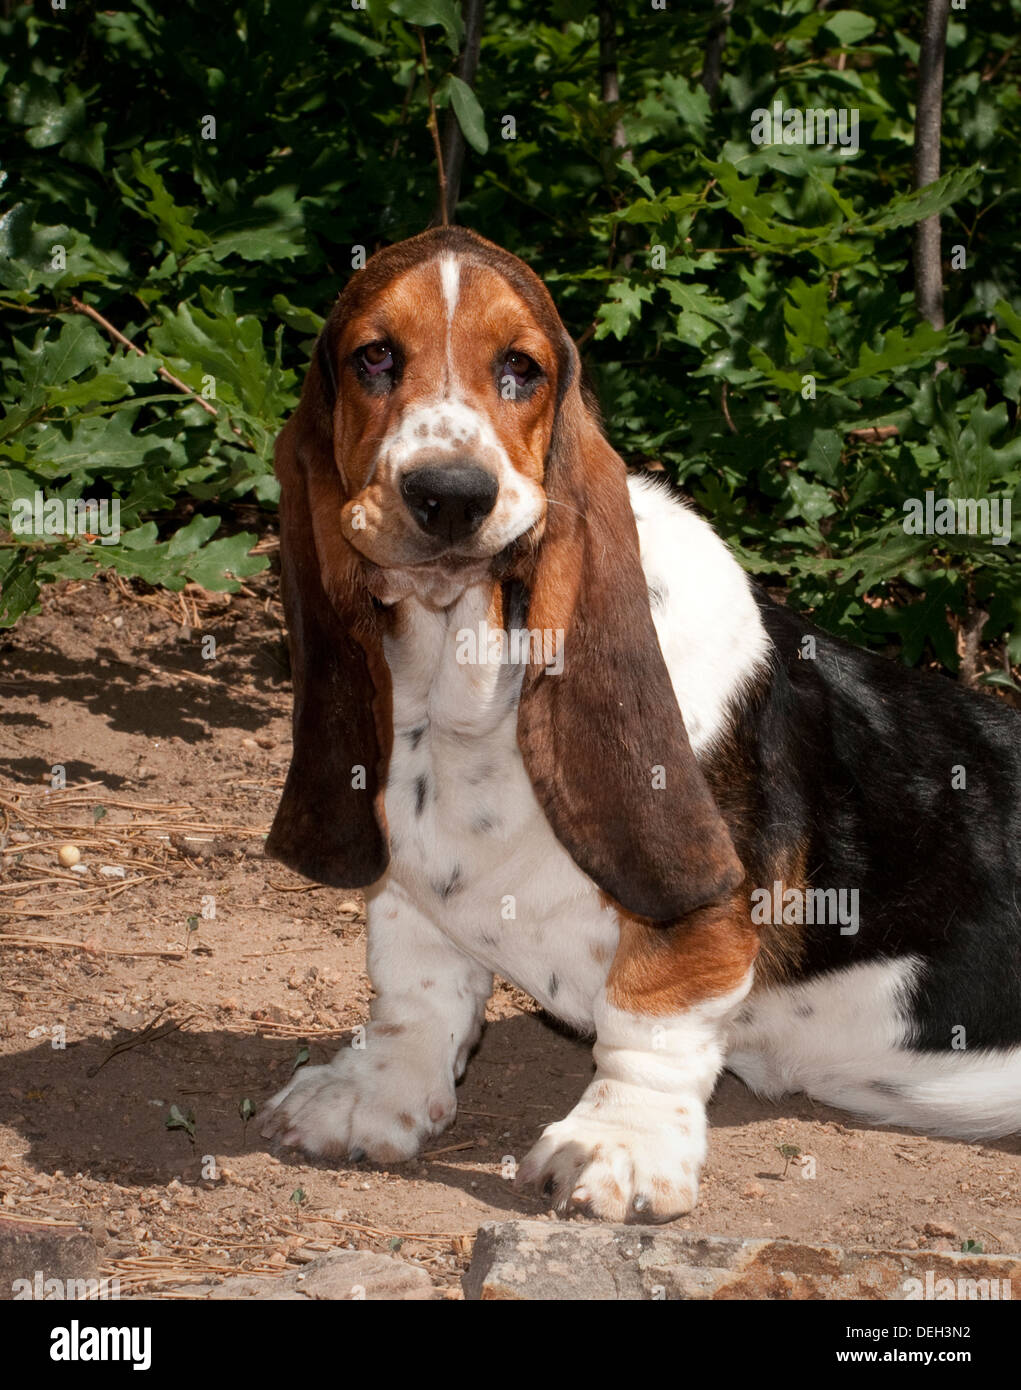 Basset hound puppy sitting Stock Photo